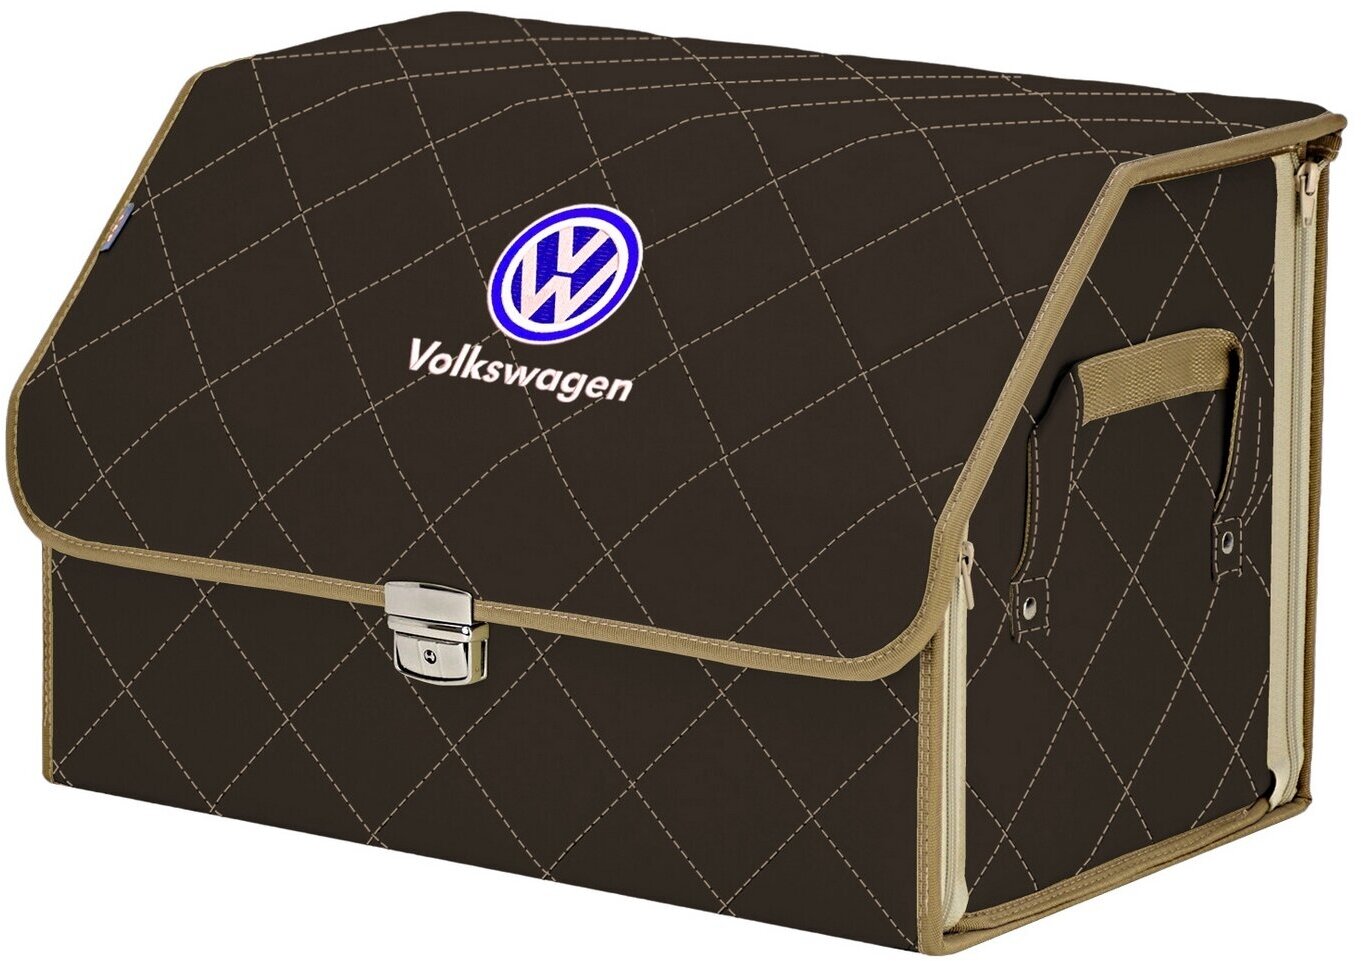 Органайзер-саквояж в багажник "Союз Премиум" (размер L). Цвет: коричневый с бежевой прострочкой Ромб и вышивкой Volkswagen (Фольксваген).